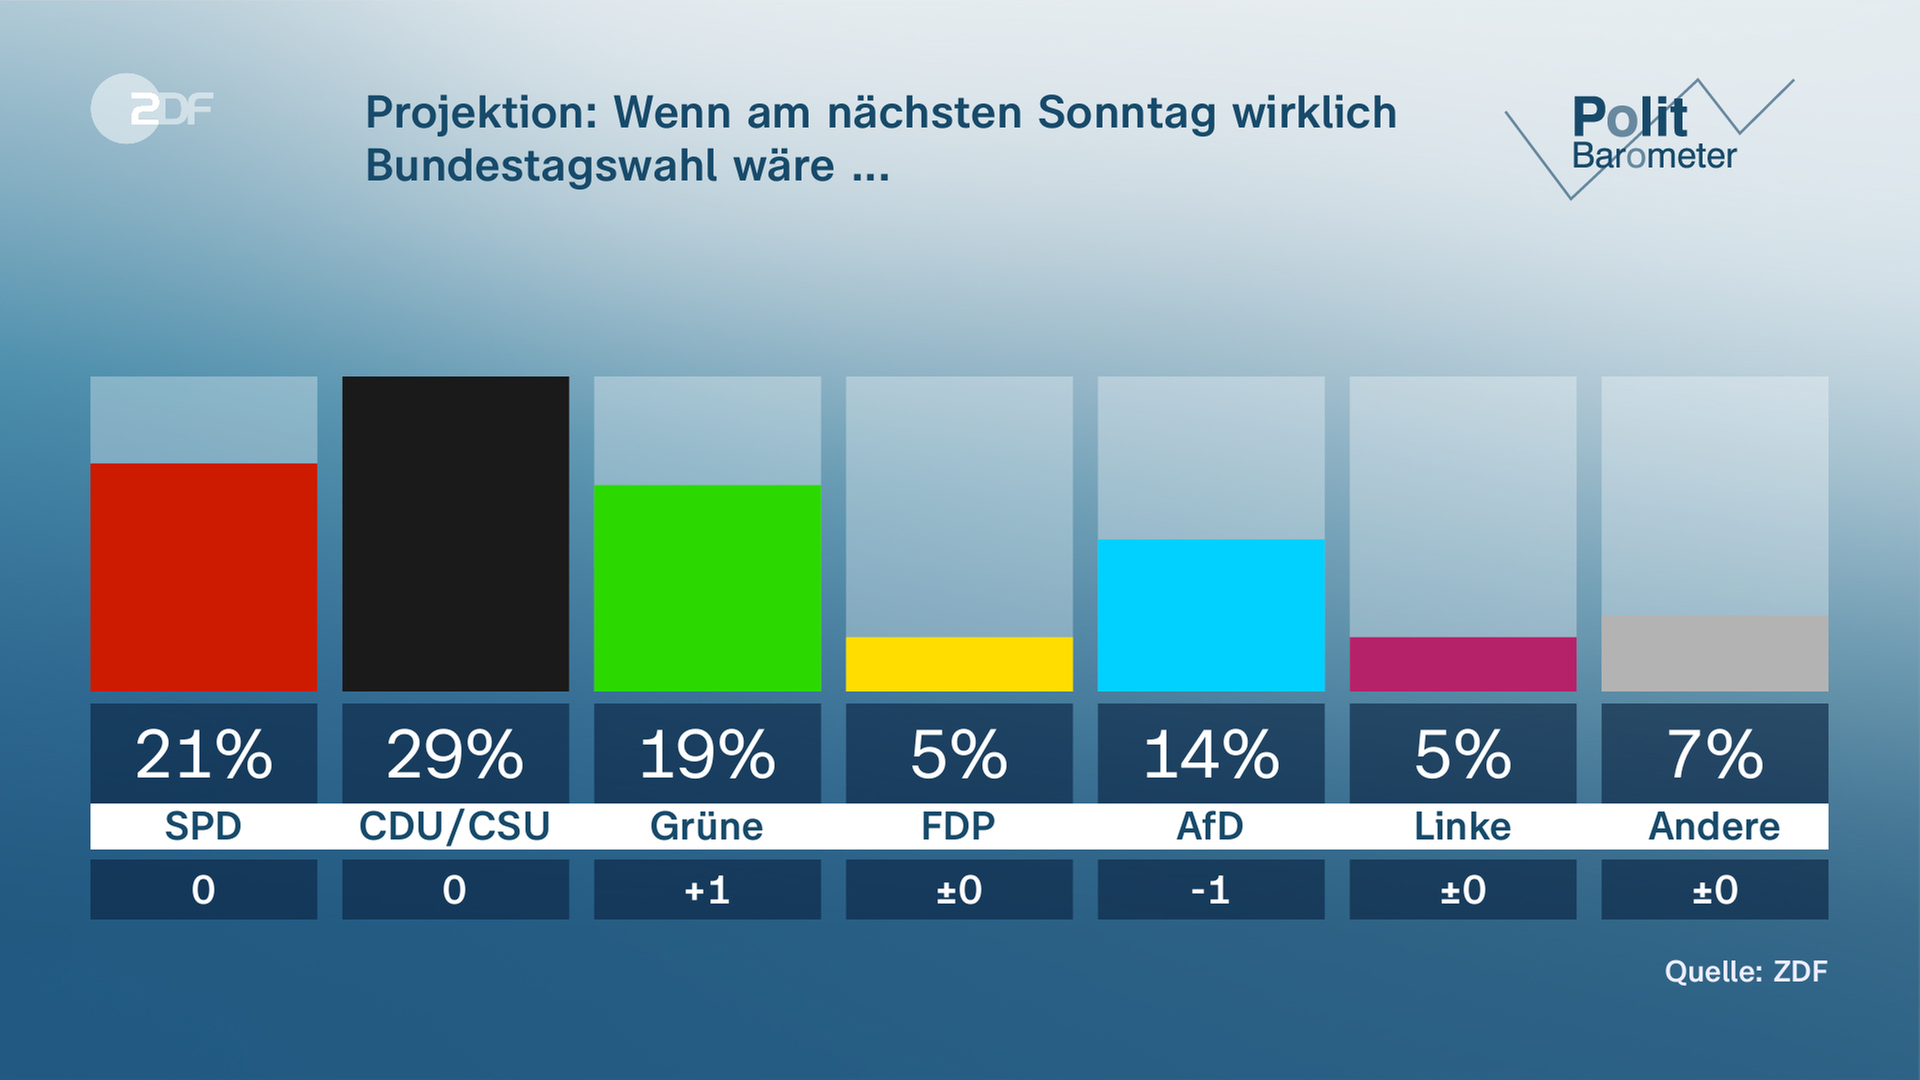 Politbarometer vom 17.03.2023, Projektion: Wenn am nächsten Sonntag wirklich Bundestagswahl wäre..."